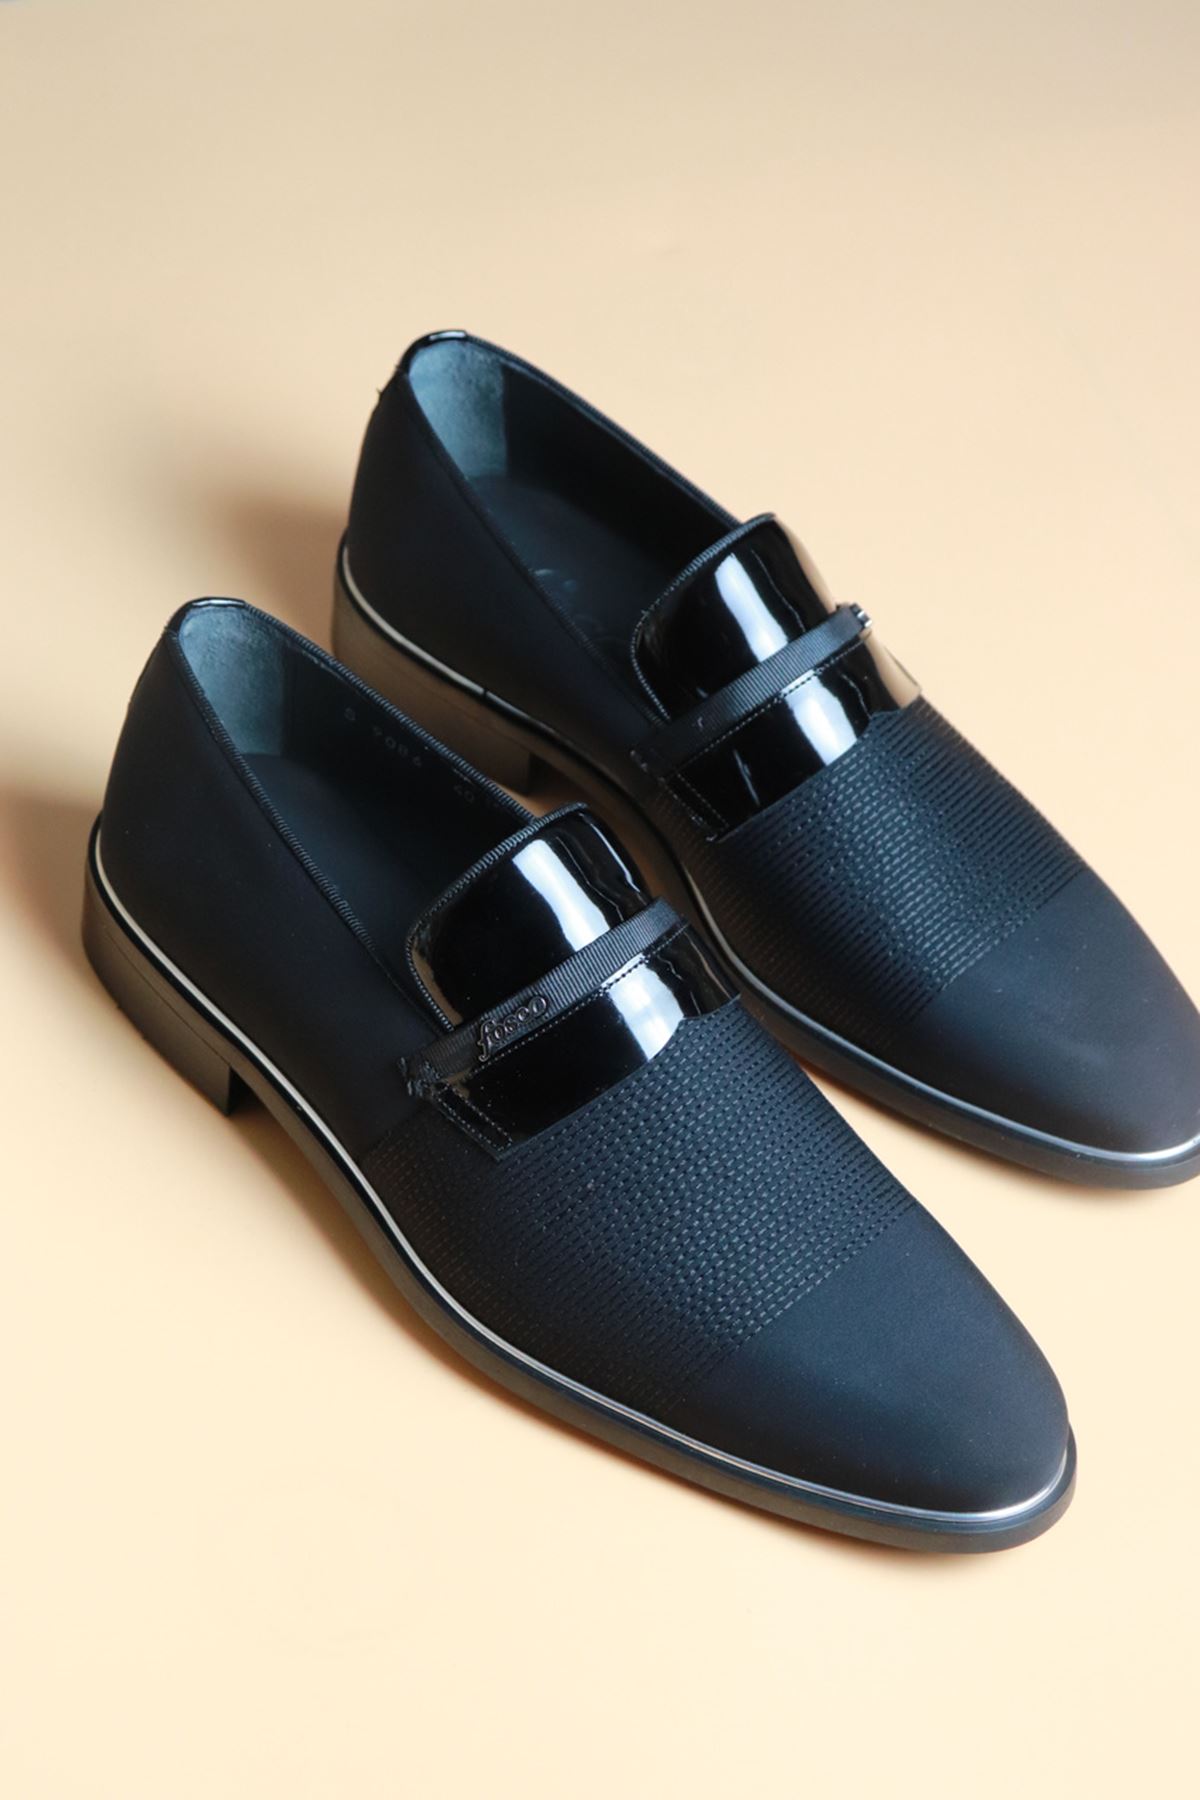 Fosco - 9086 - Siyah Saten Klasik Erkek Ayakkabı 